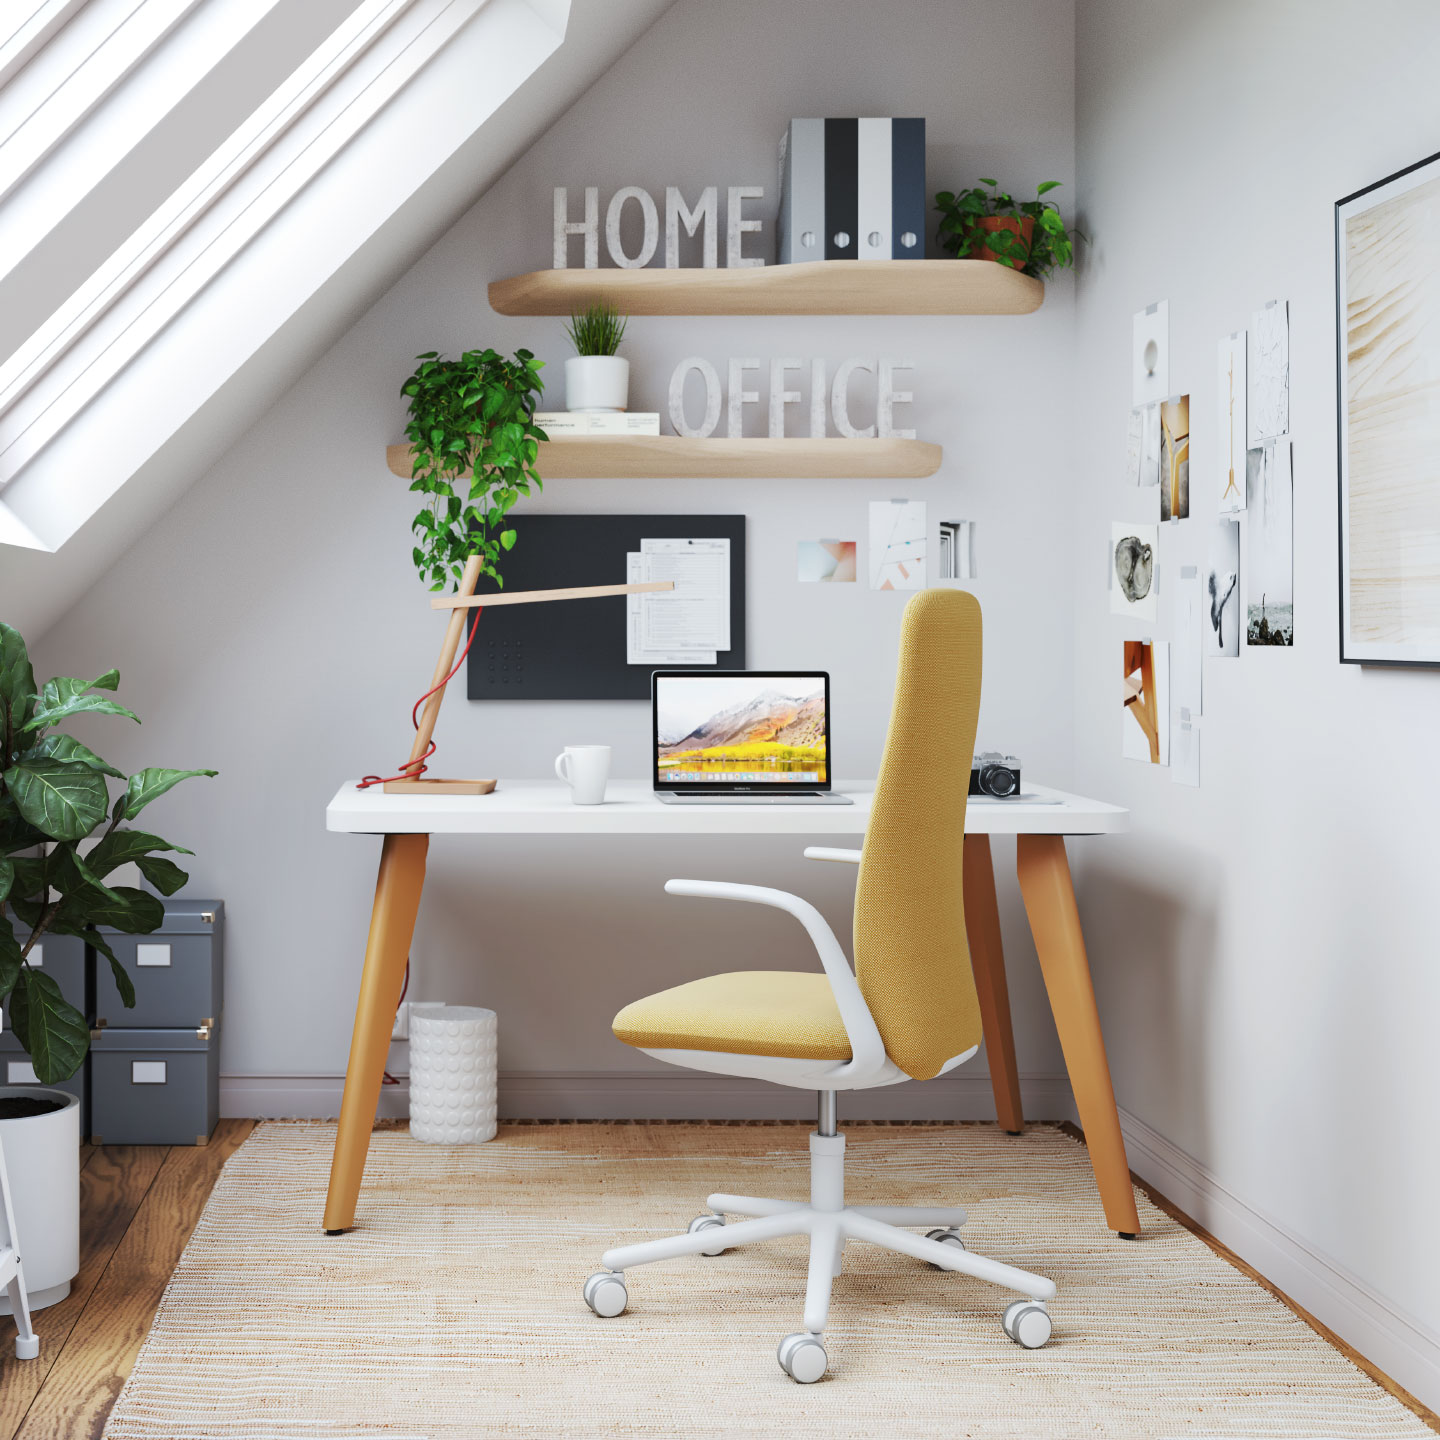 El taburete Nia es una alternativa a la silla clásica en espacios de trabajo ágiles, gracias a su ergonomía y comodidad.